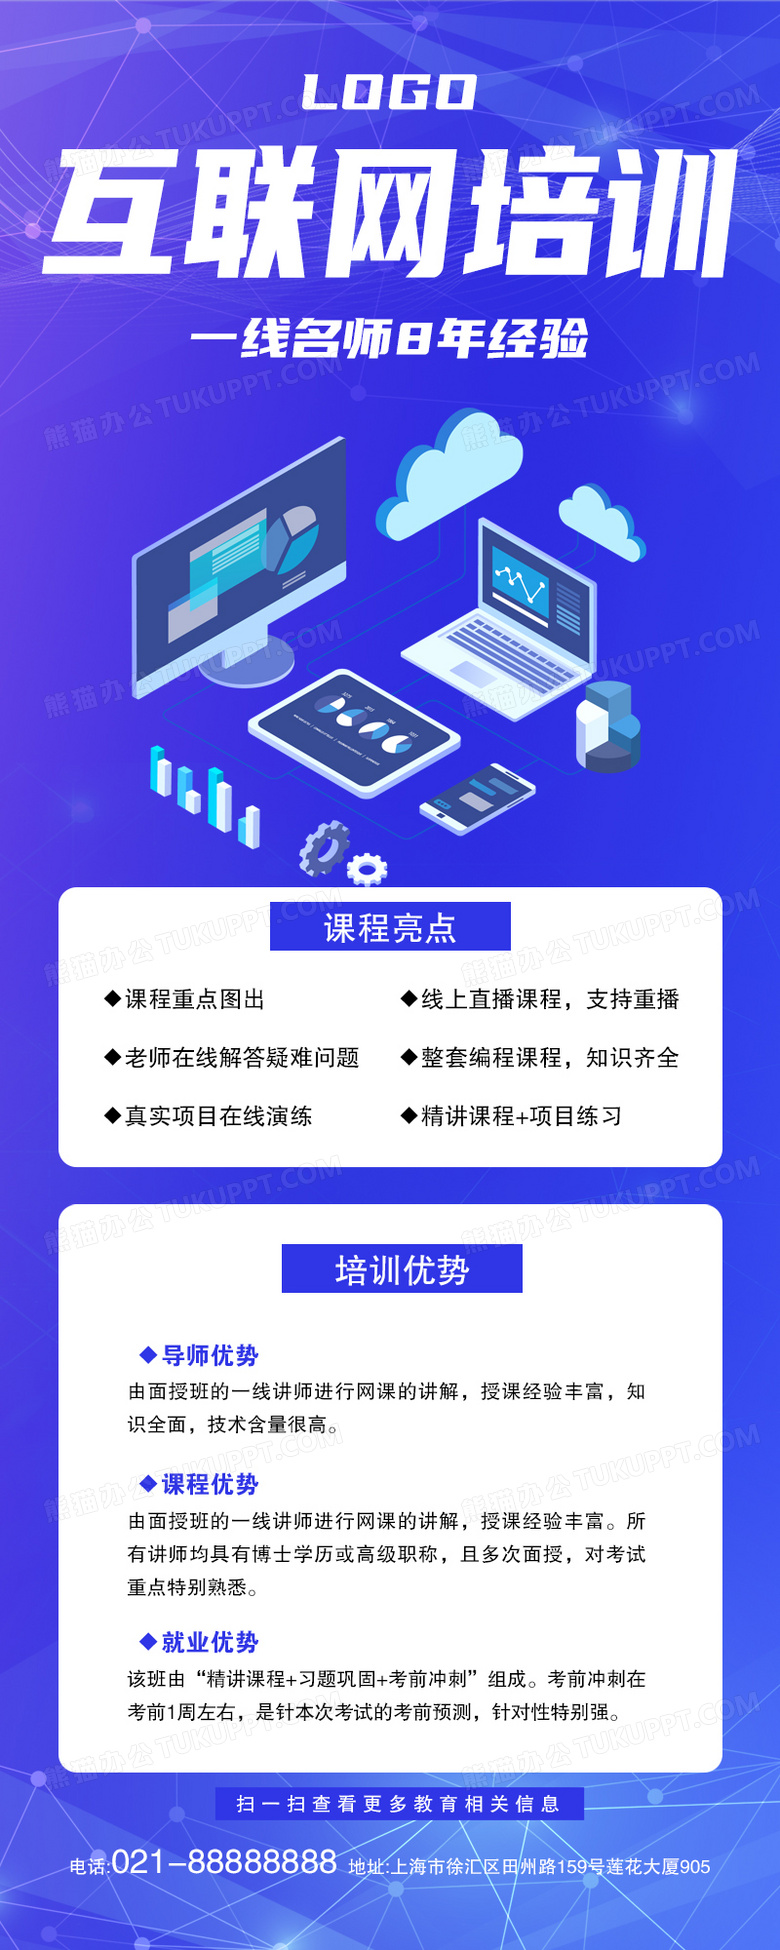 互联网培训招生简约风蓝紫色ui手机长图模版